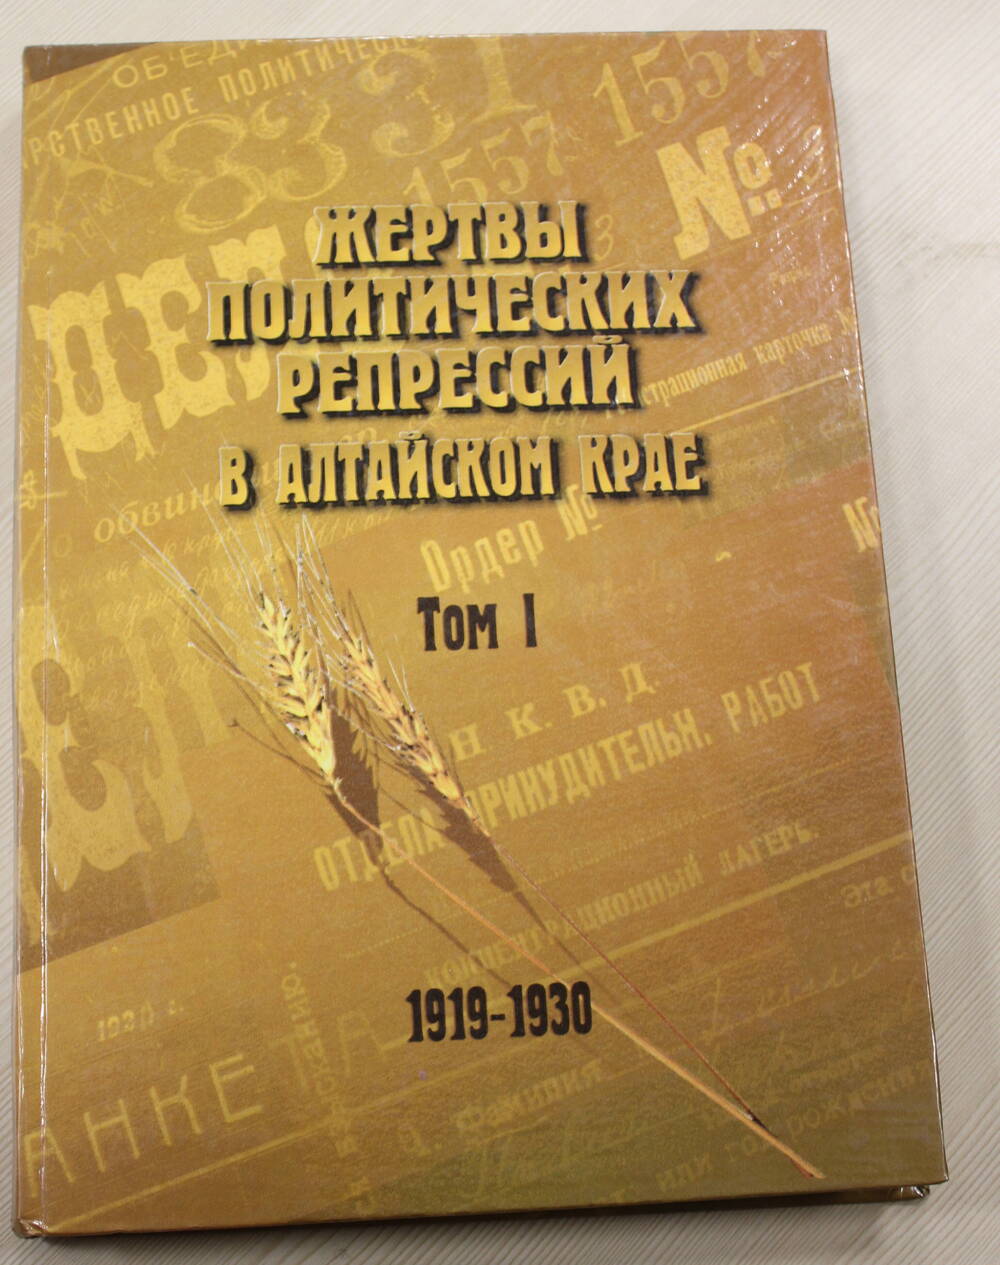 Книга Жертвы политических репрессий в Алтайском крае том 1, 1919 - 1930гг.